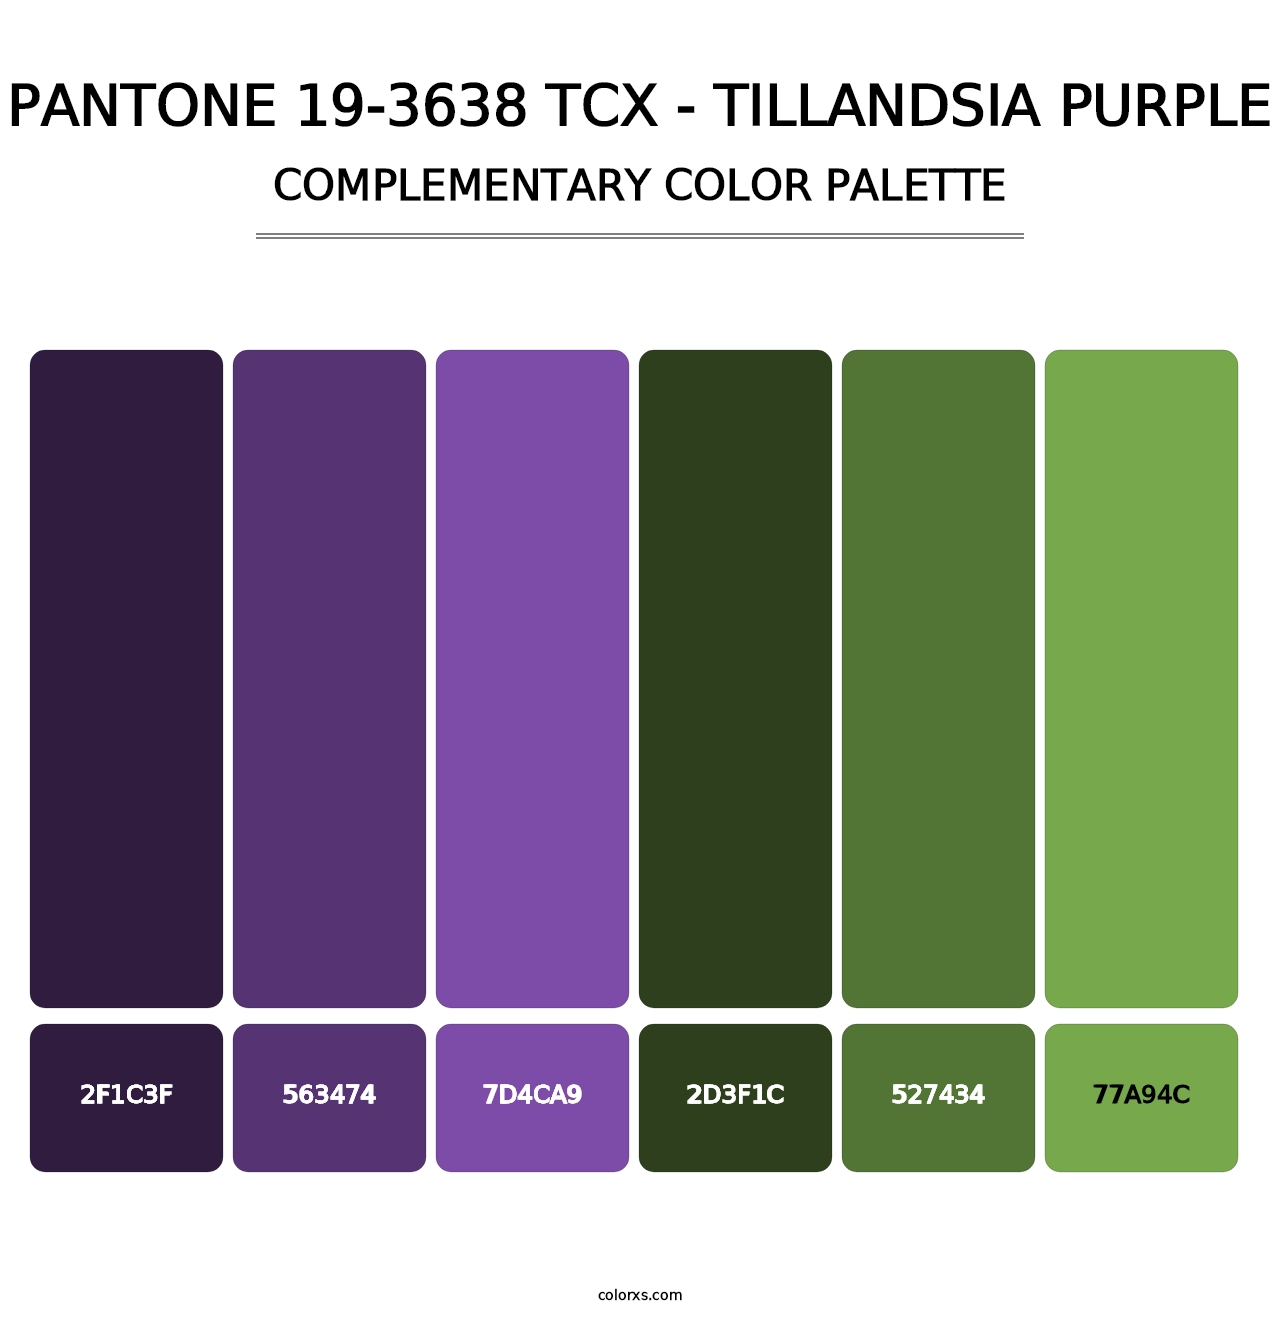 PANTONE 19-3638 TCX - Tillandsia Purple - Complementary Color Palette